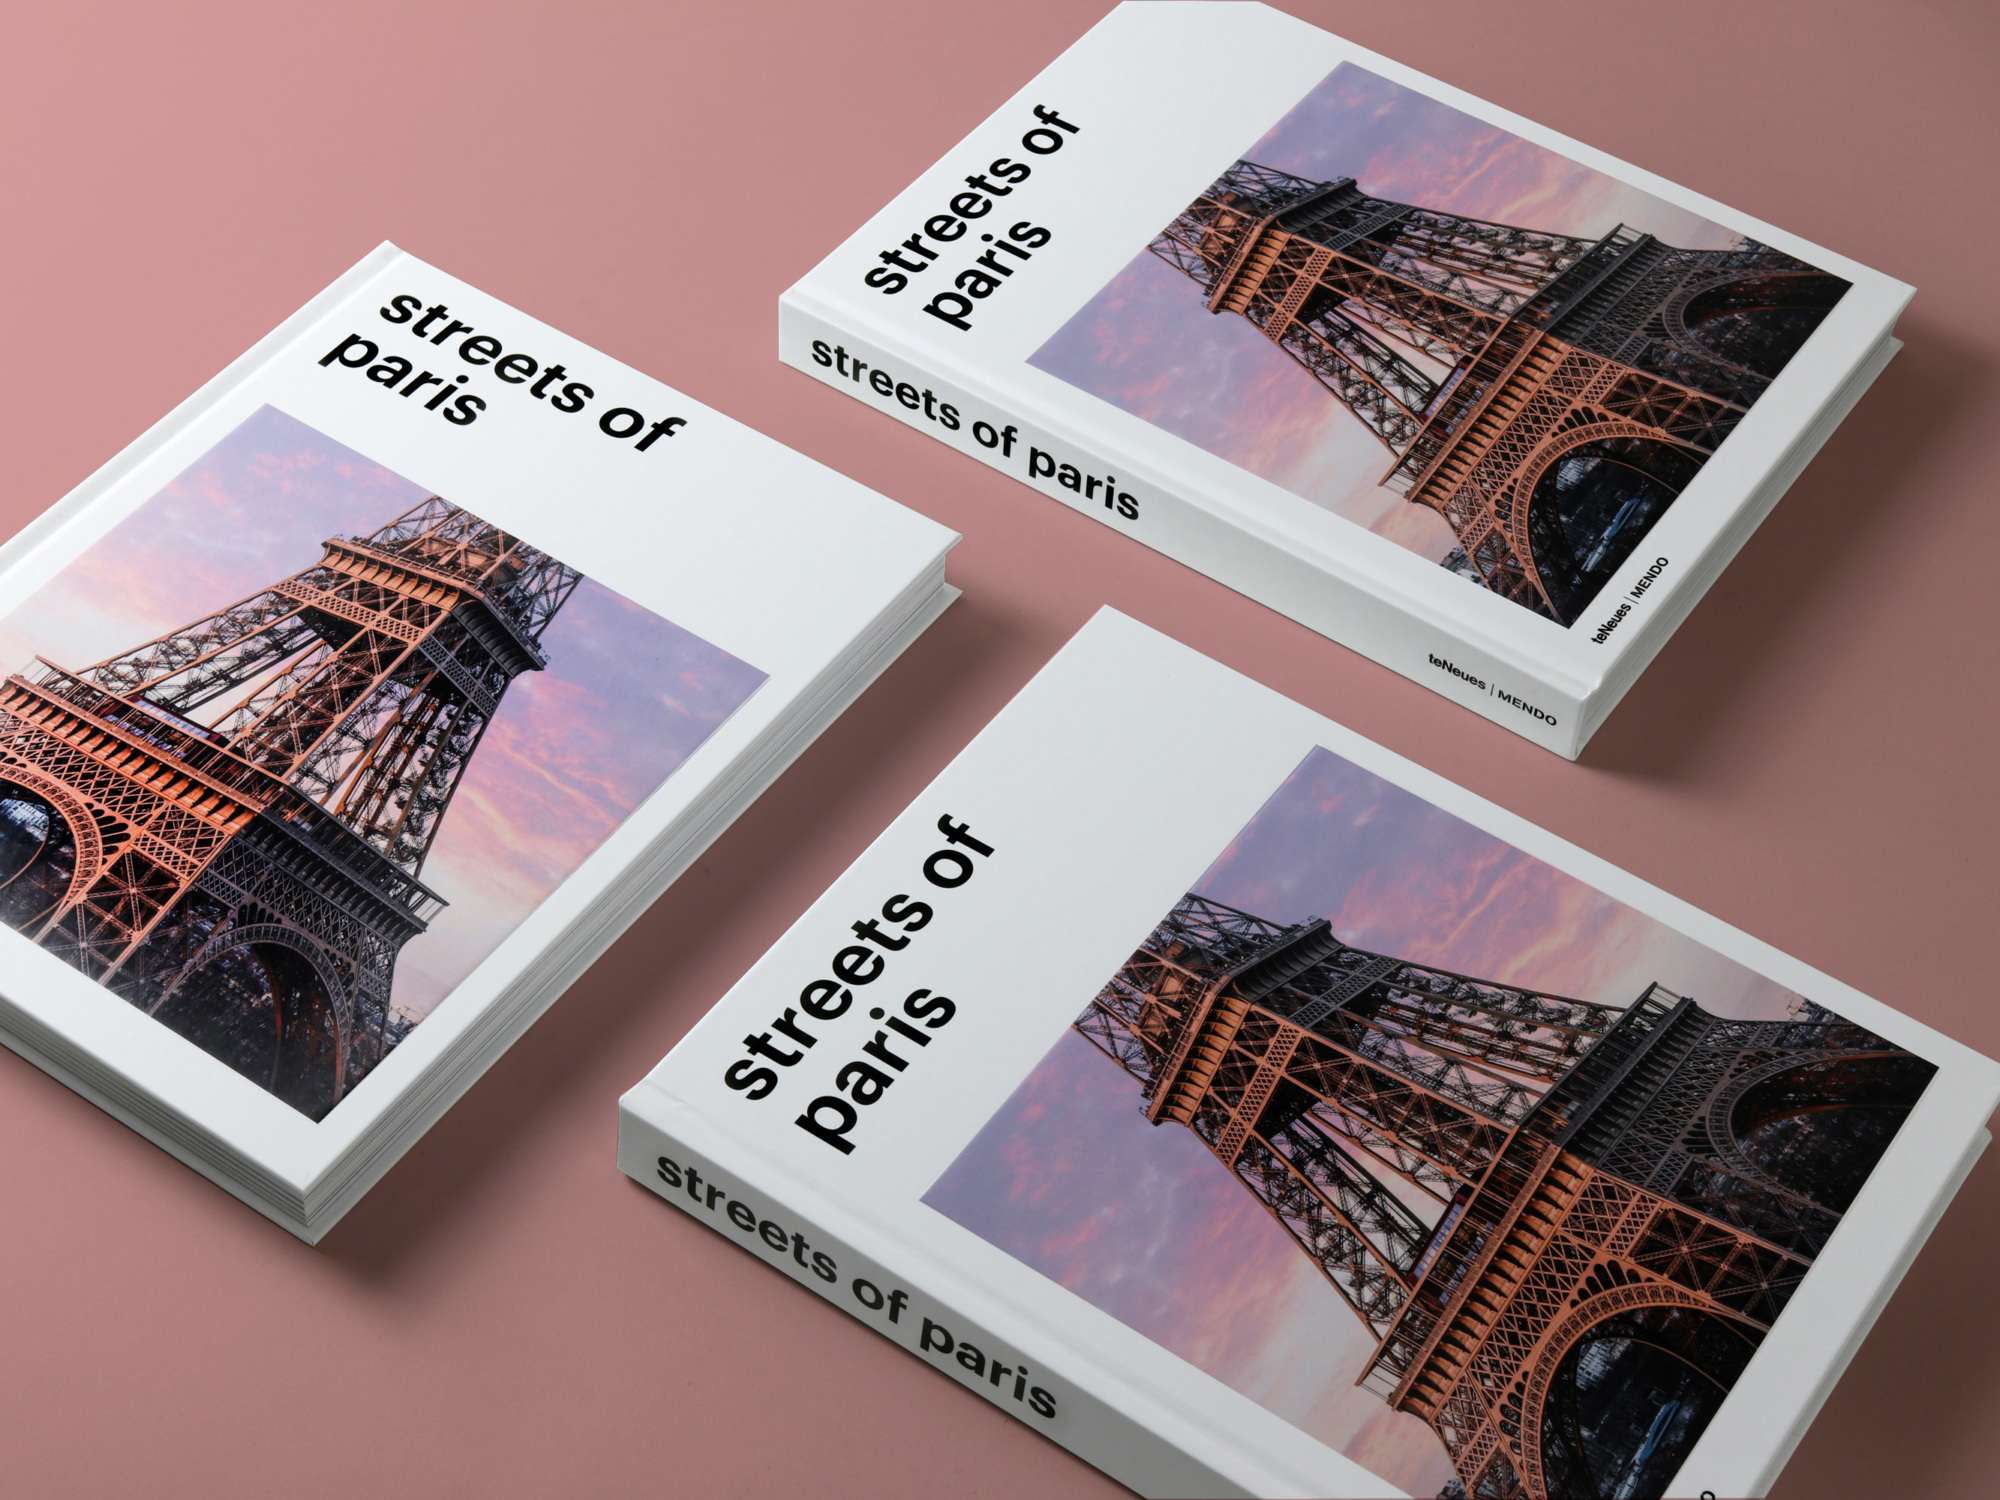 mendo-book-streets-of-paris-studio-25-2000x1500-c-default.jpg